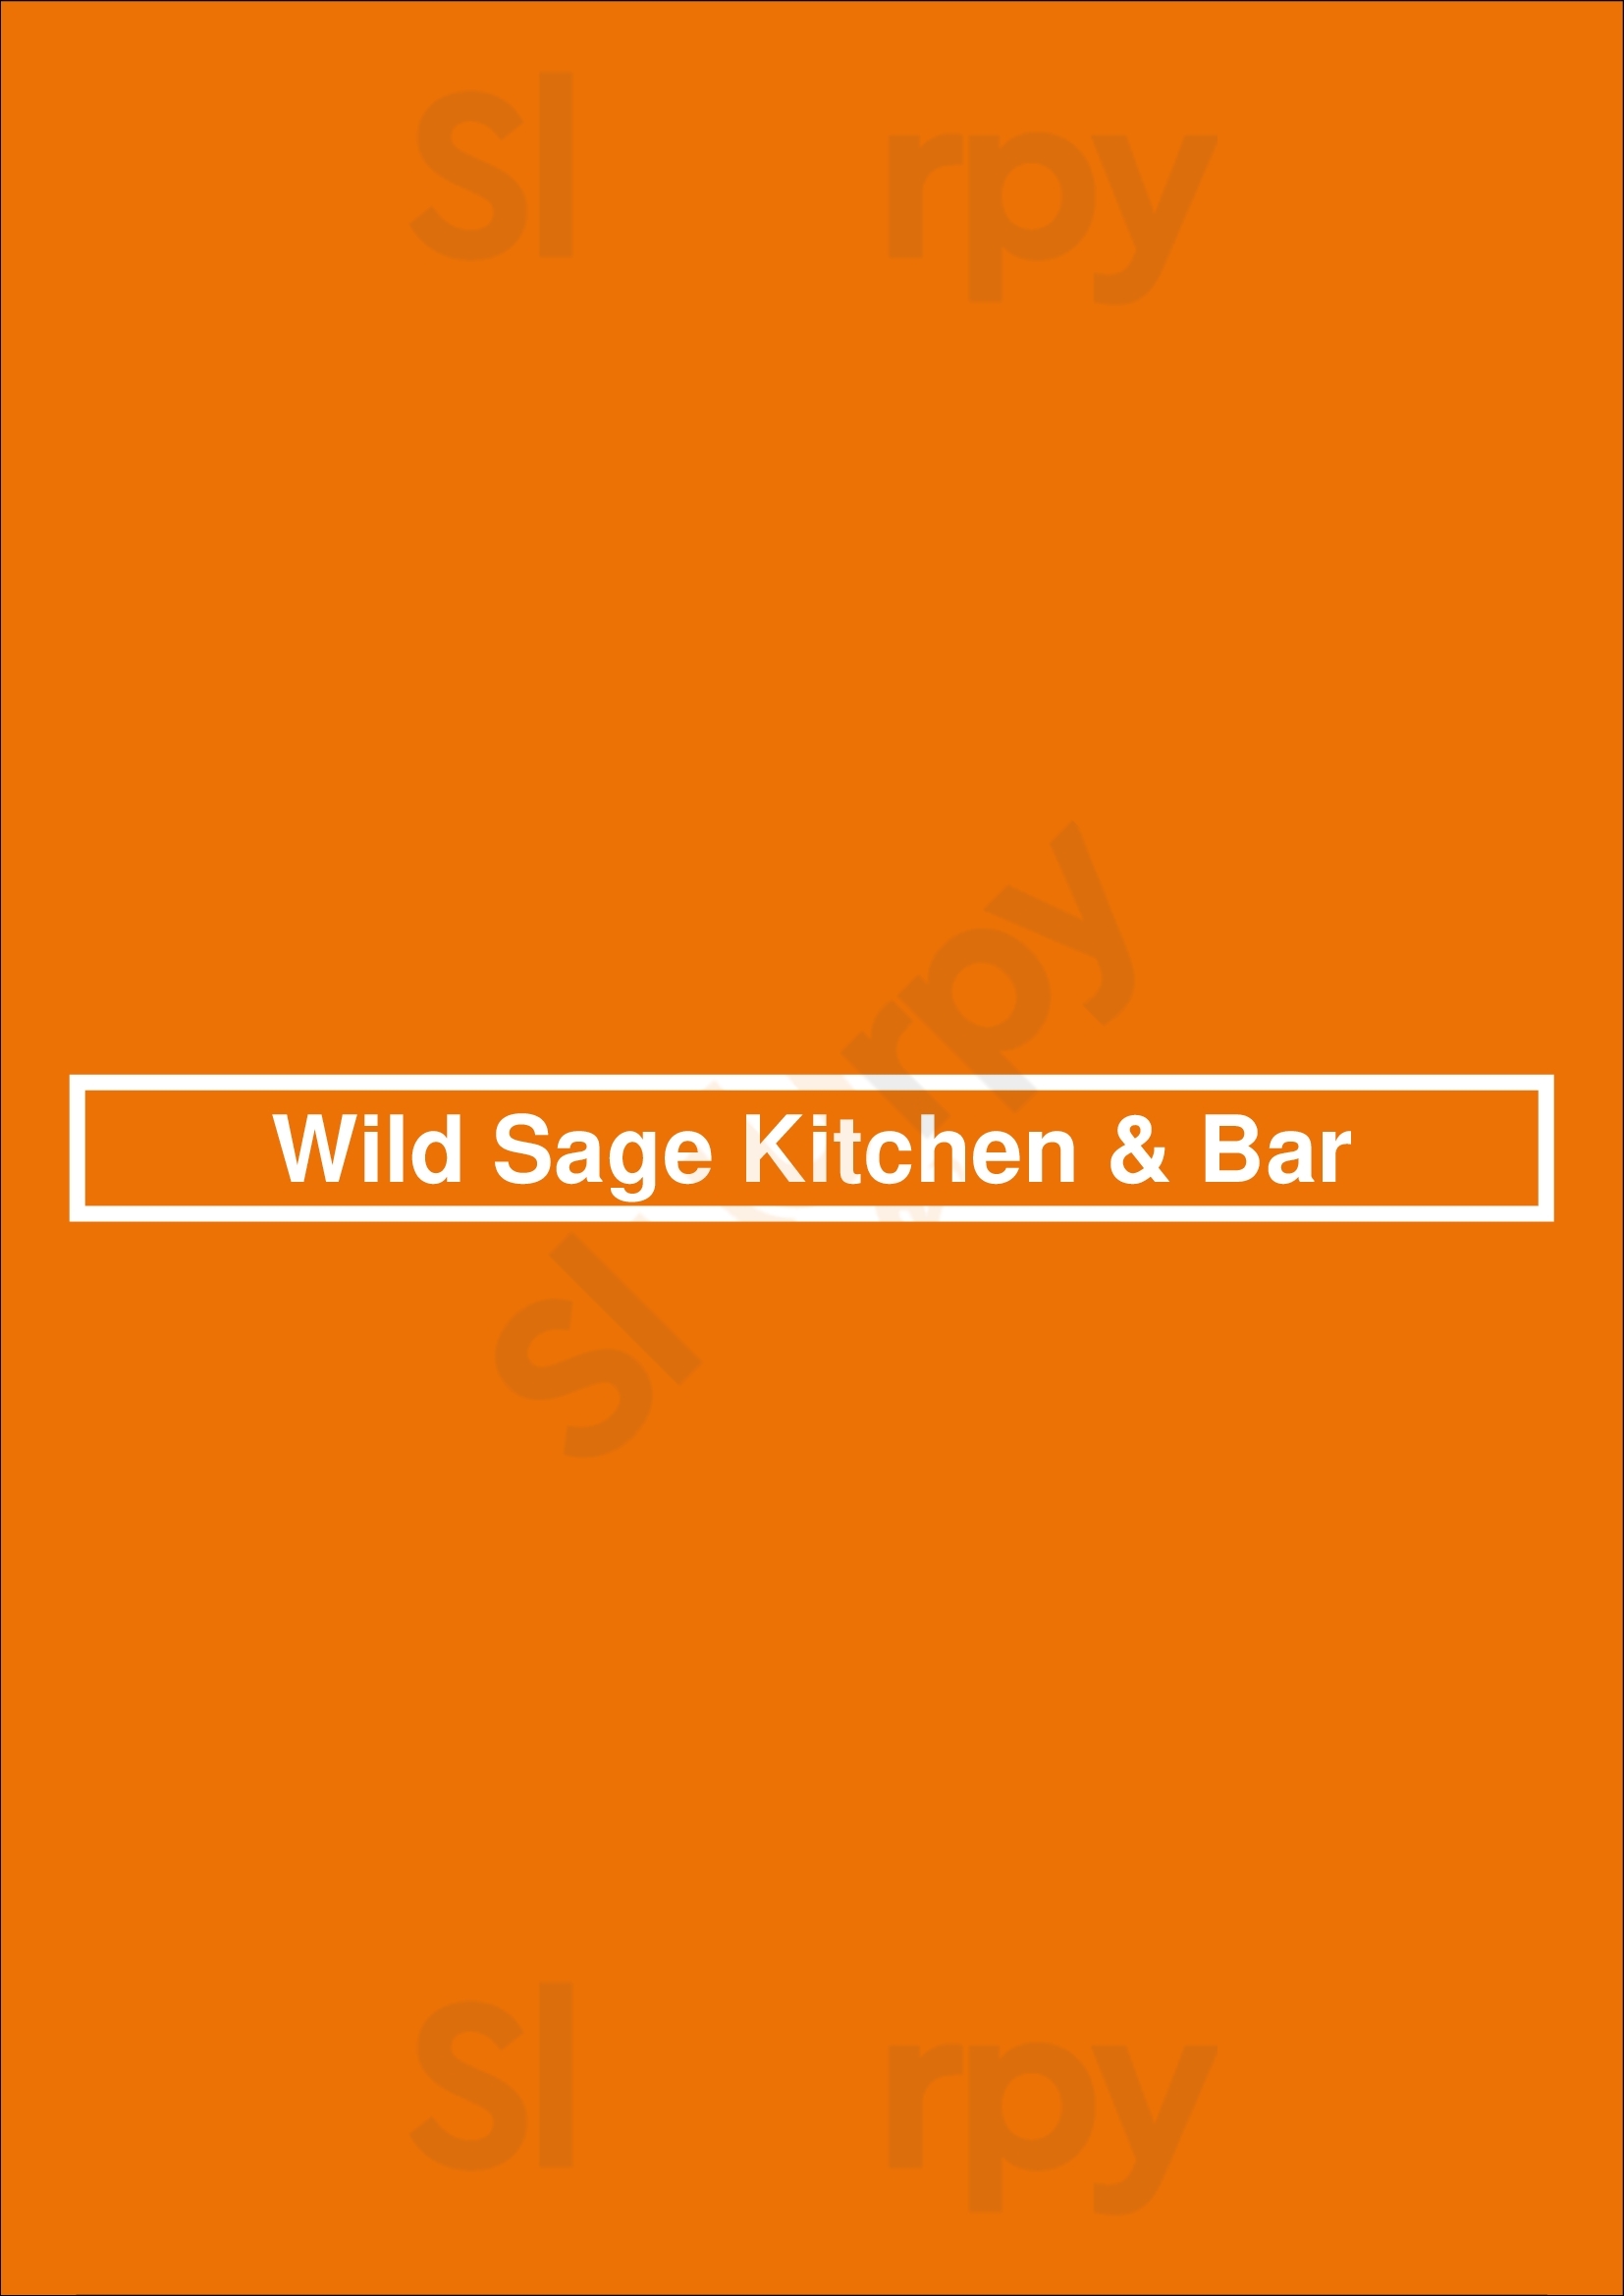 Wild Sage Kitchen & Bar Regina Menu - 1